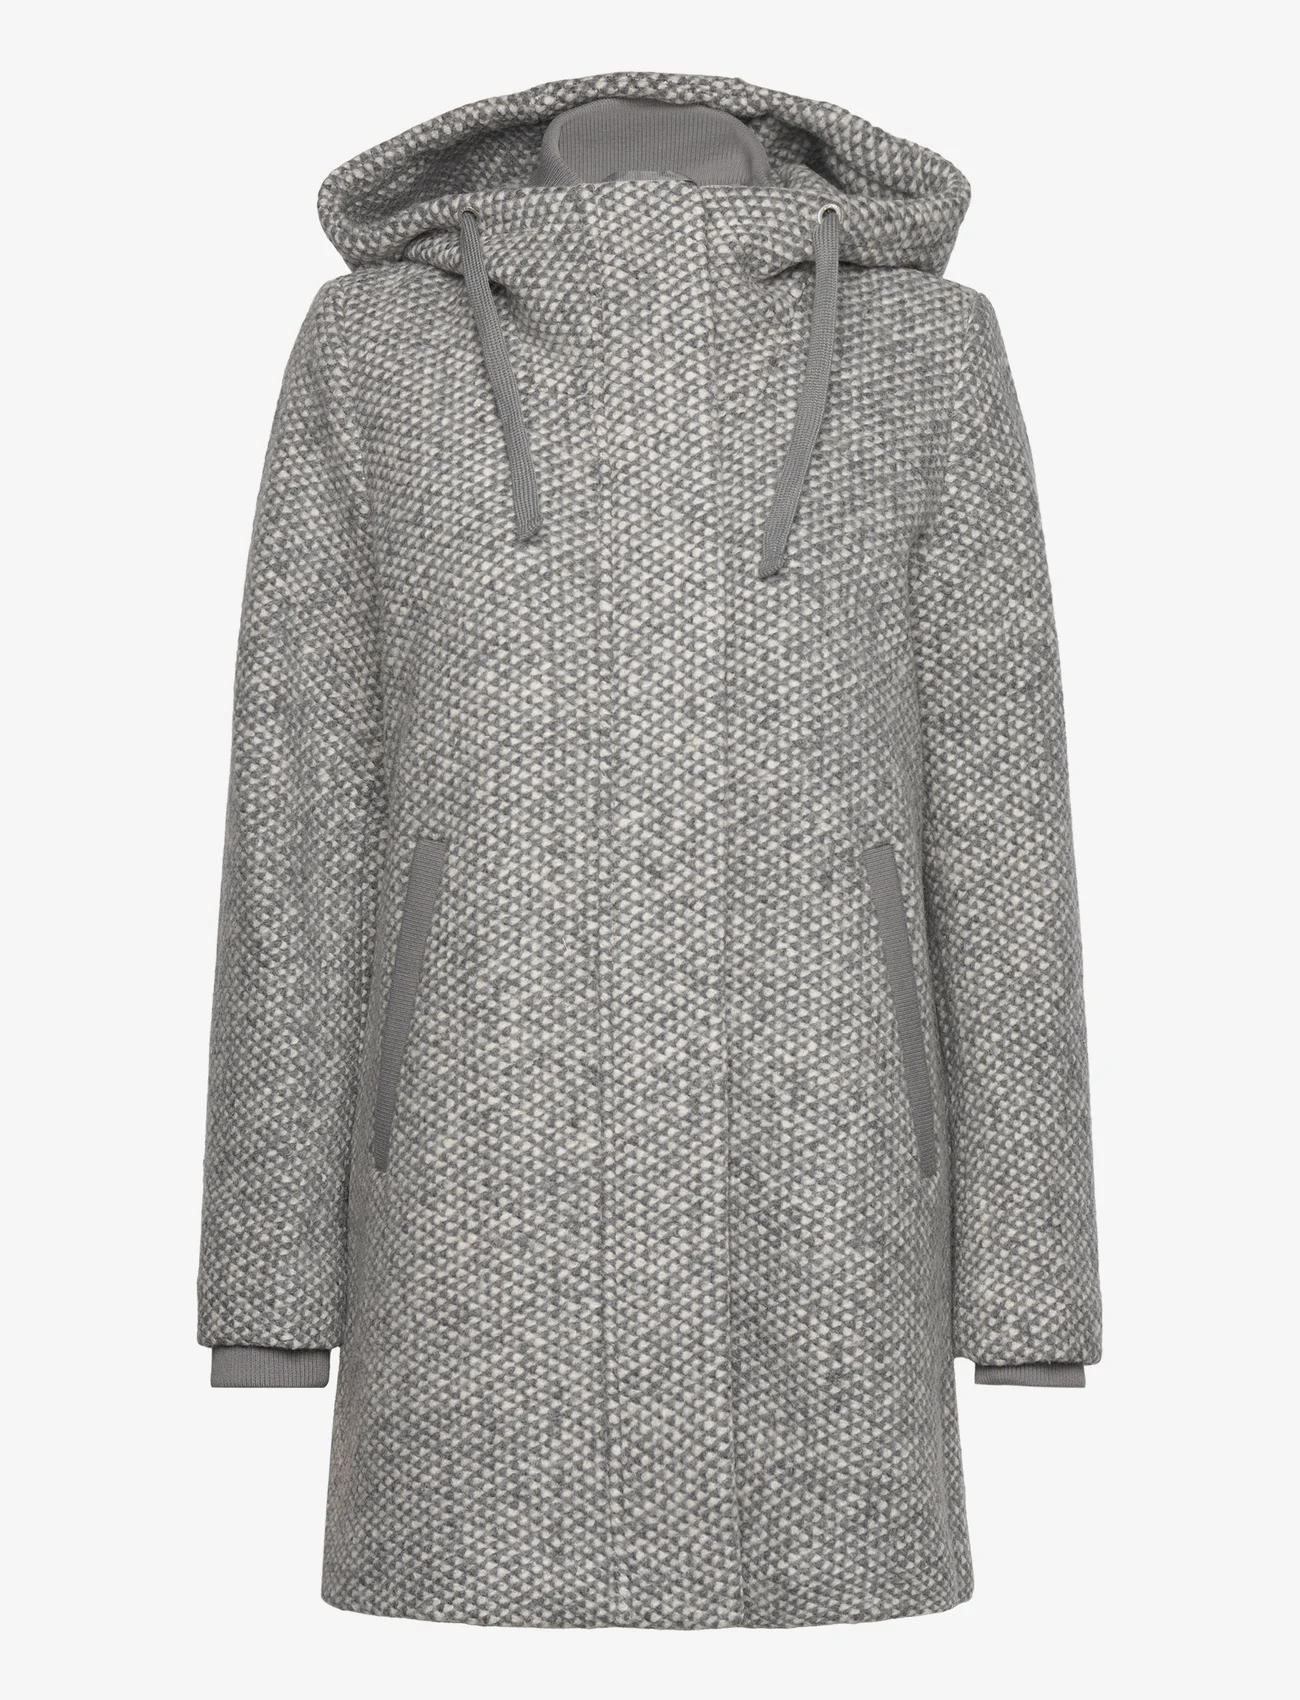 Esprit Casual - Coats woven - vinterkappor - light grey 3 - 0